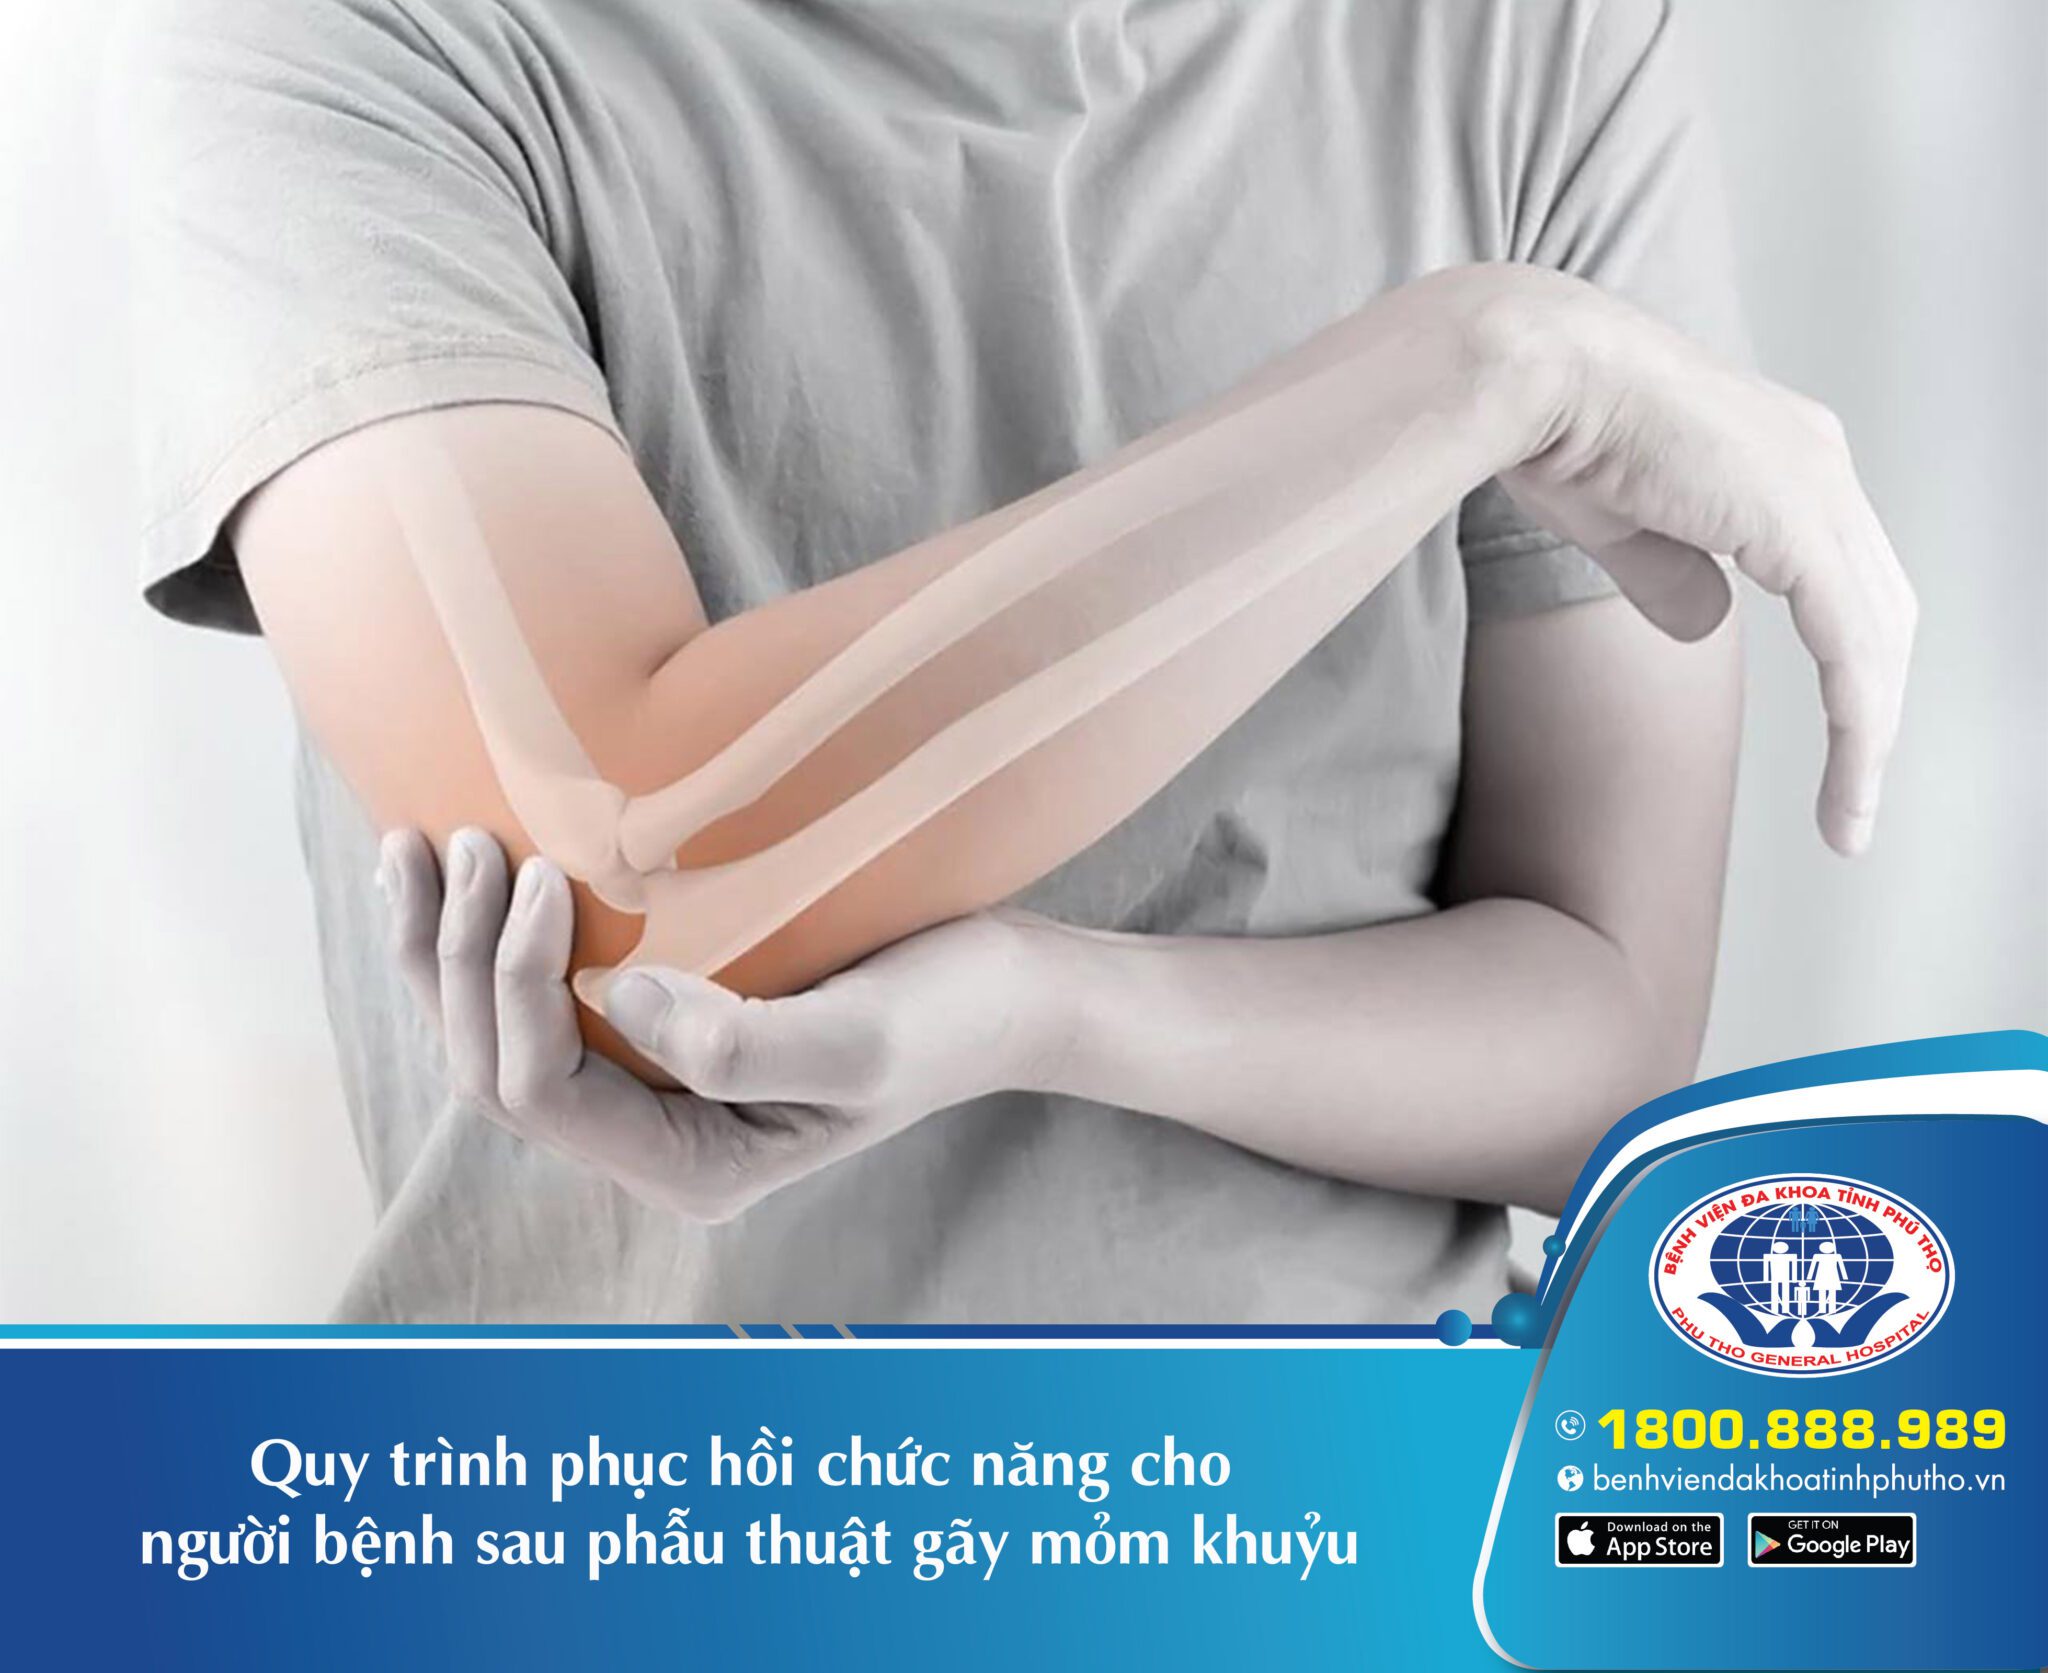 Phương pháp phục hồi chức năng khớp khuỷu tay hiệu quả và an toàn